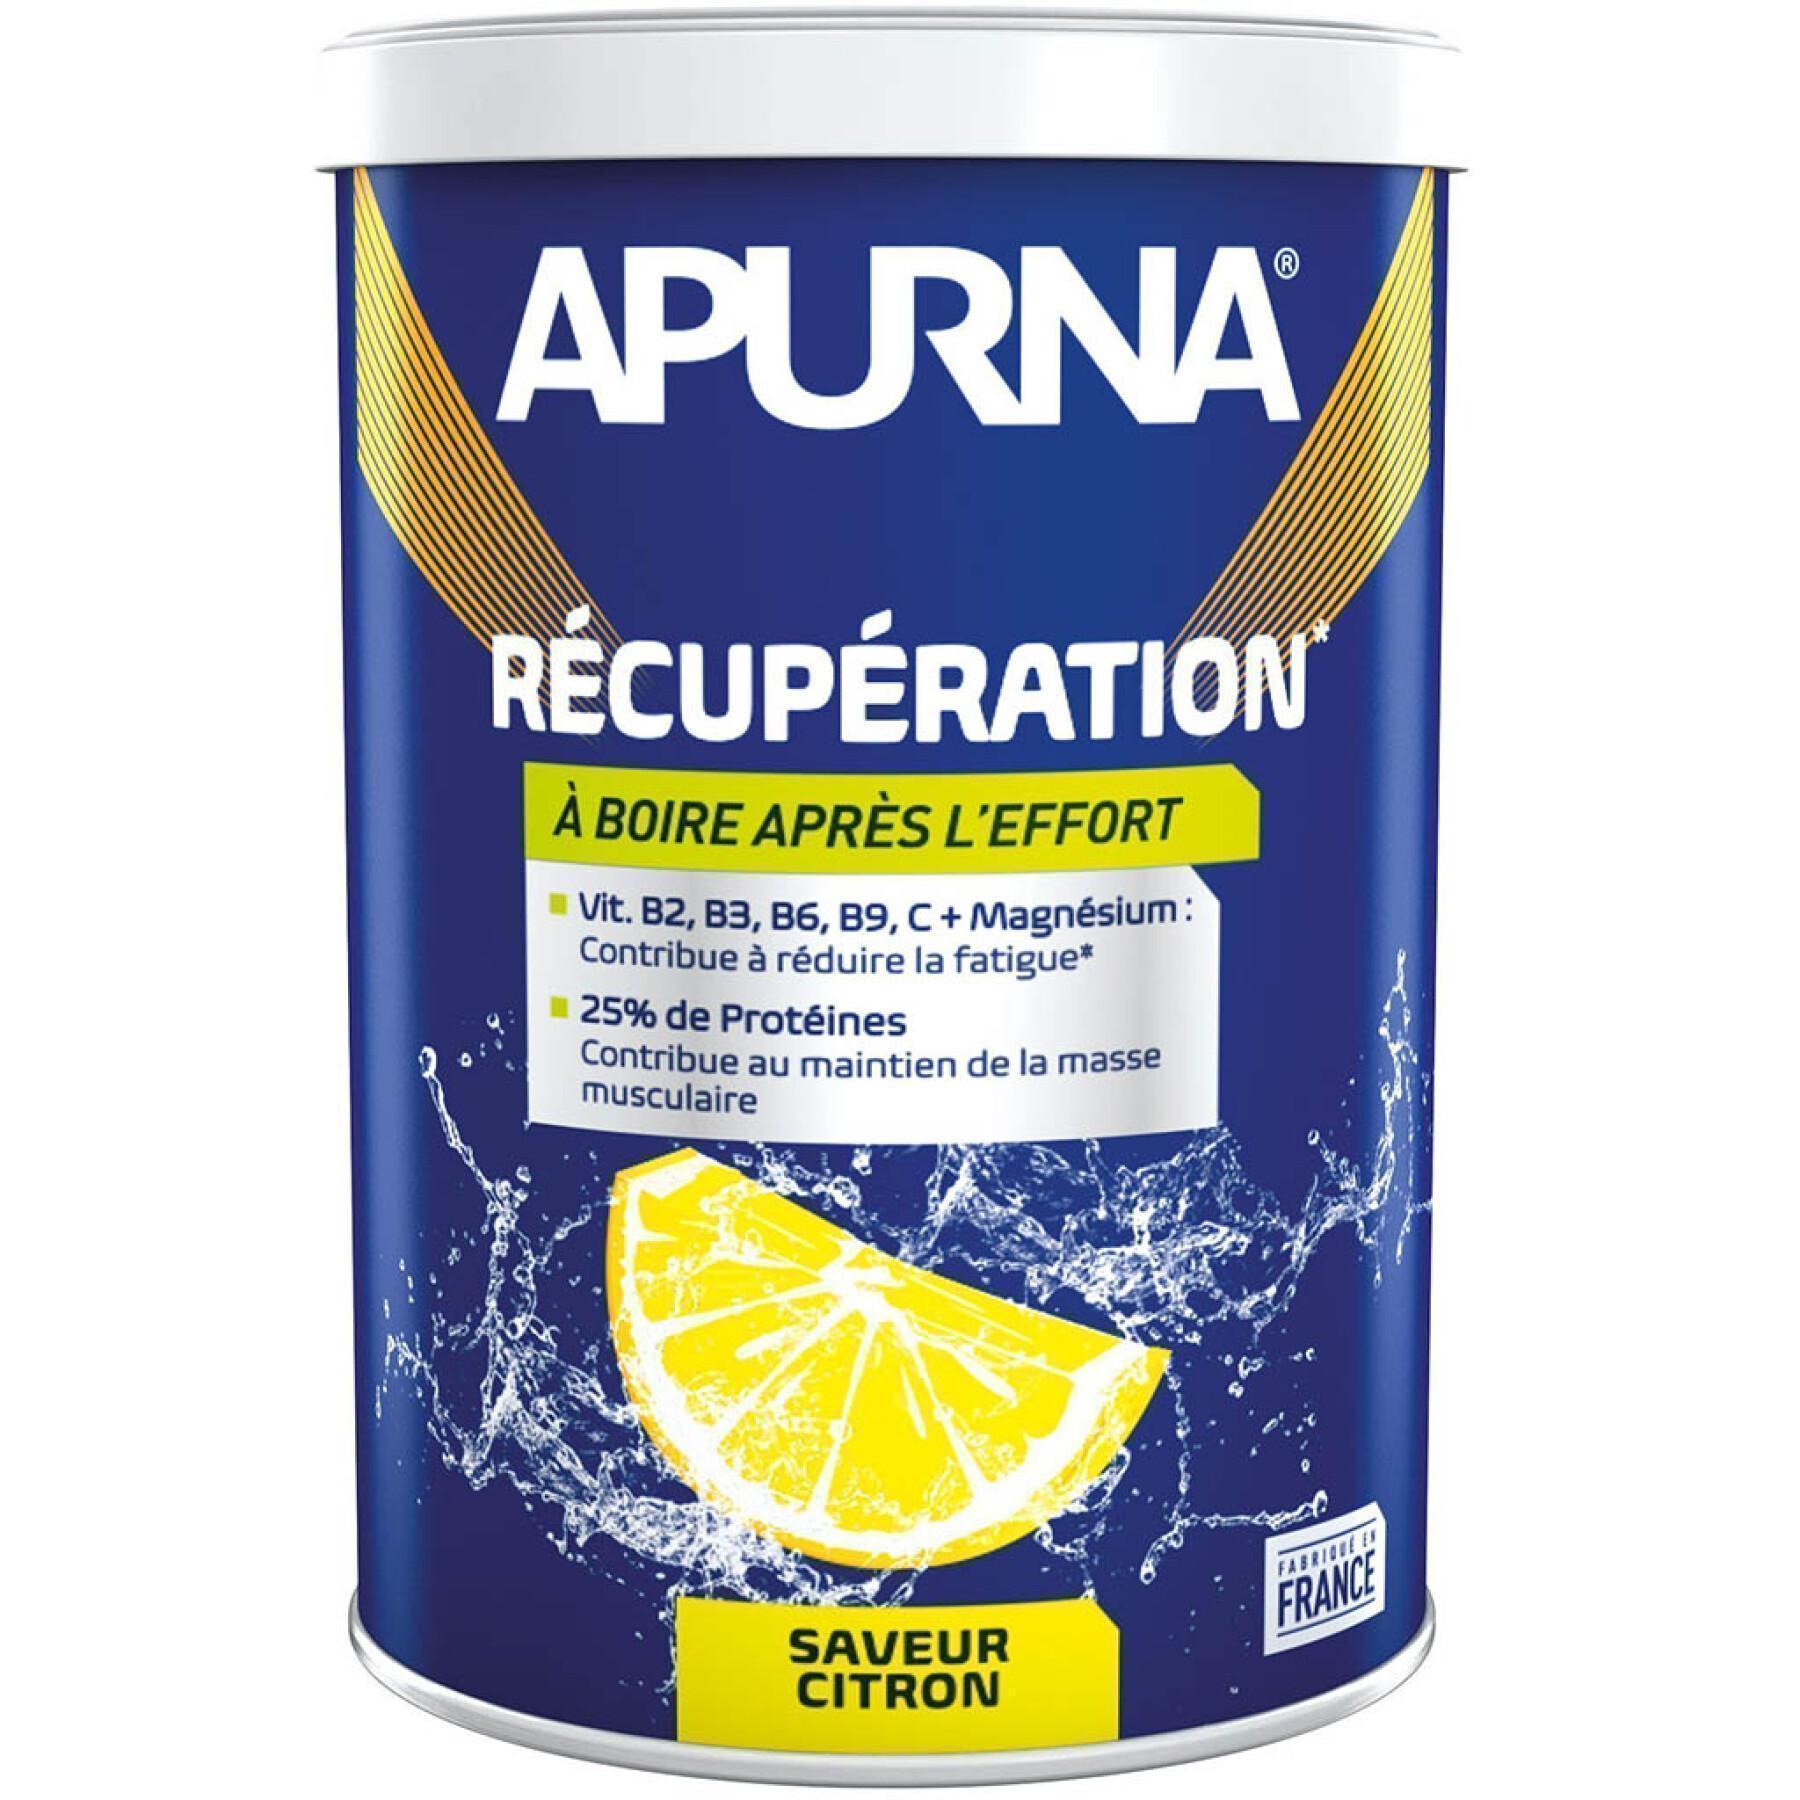 Lata de proteína de limão de recuperação Apurna